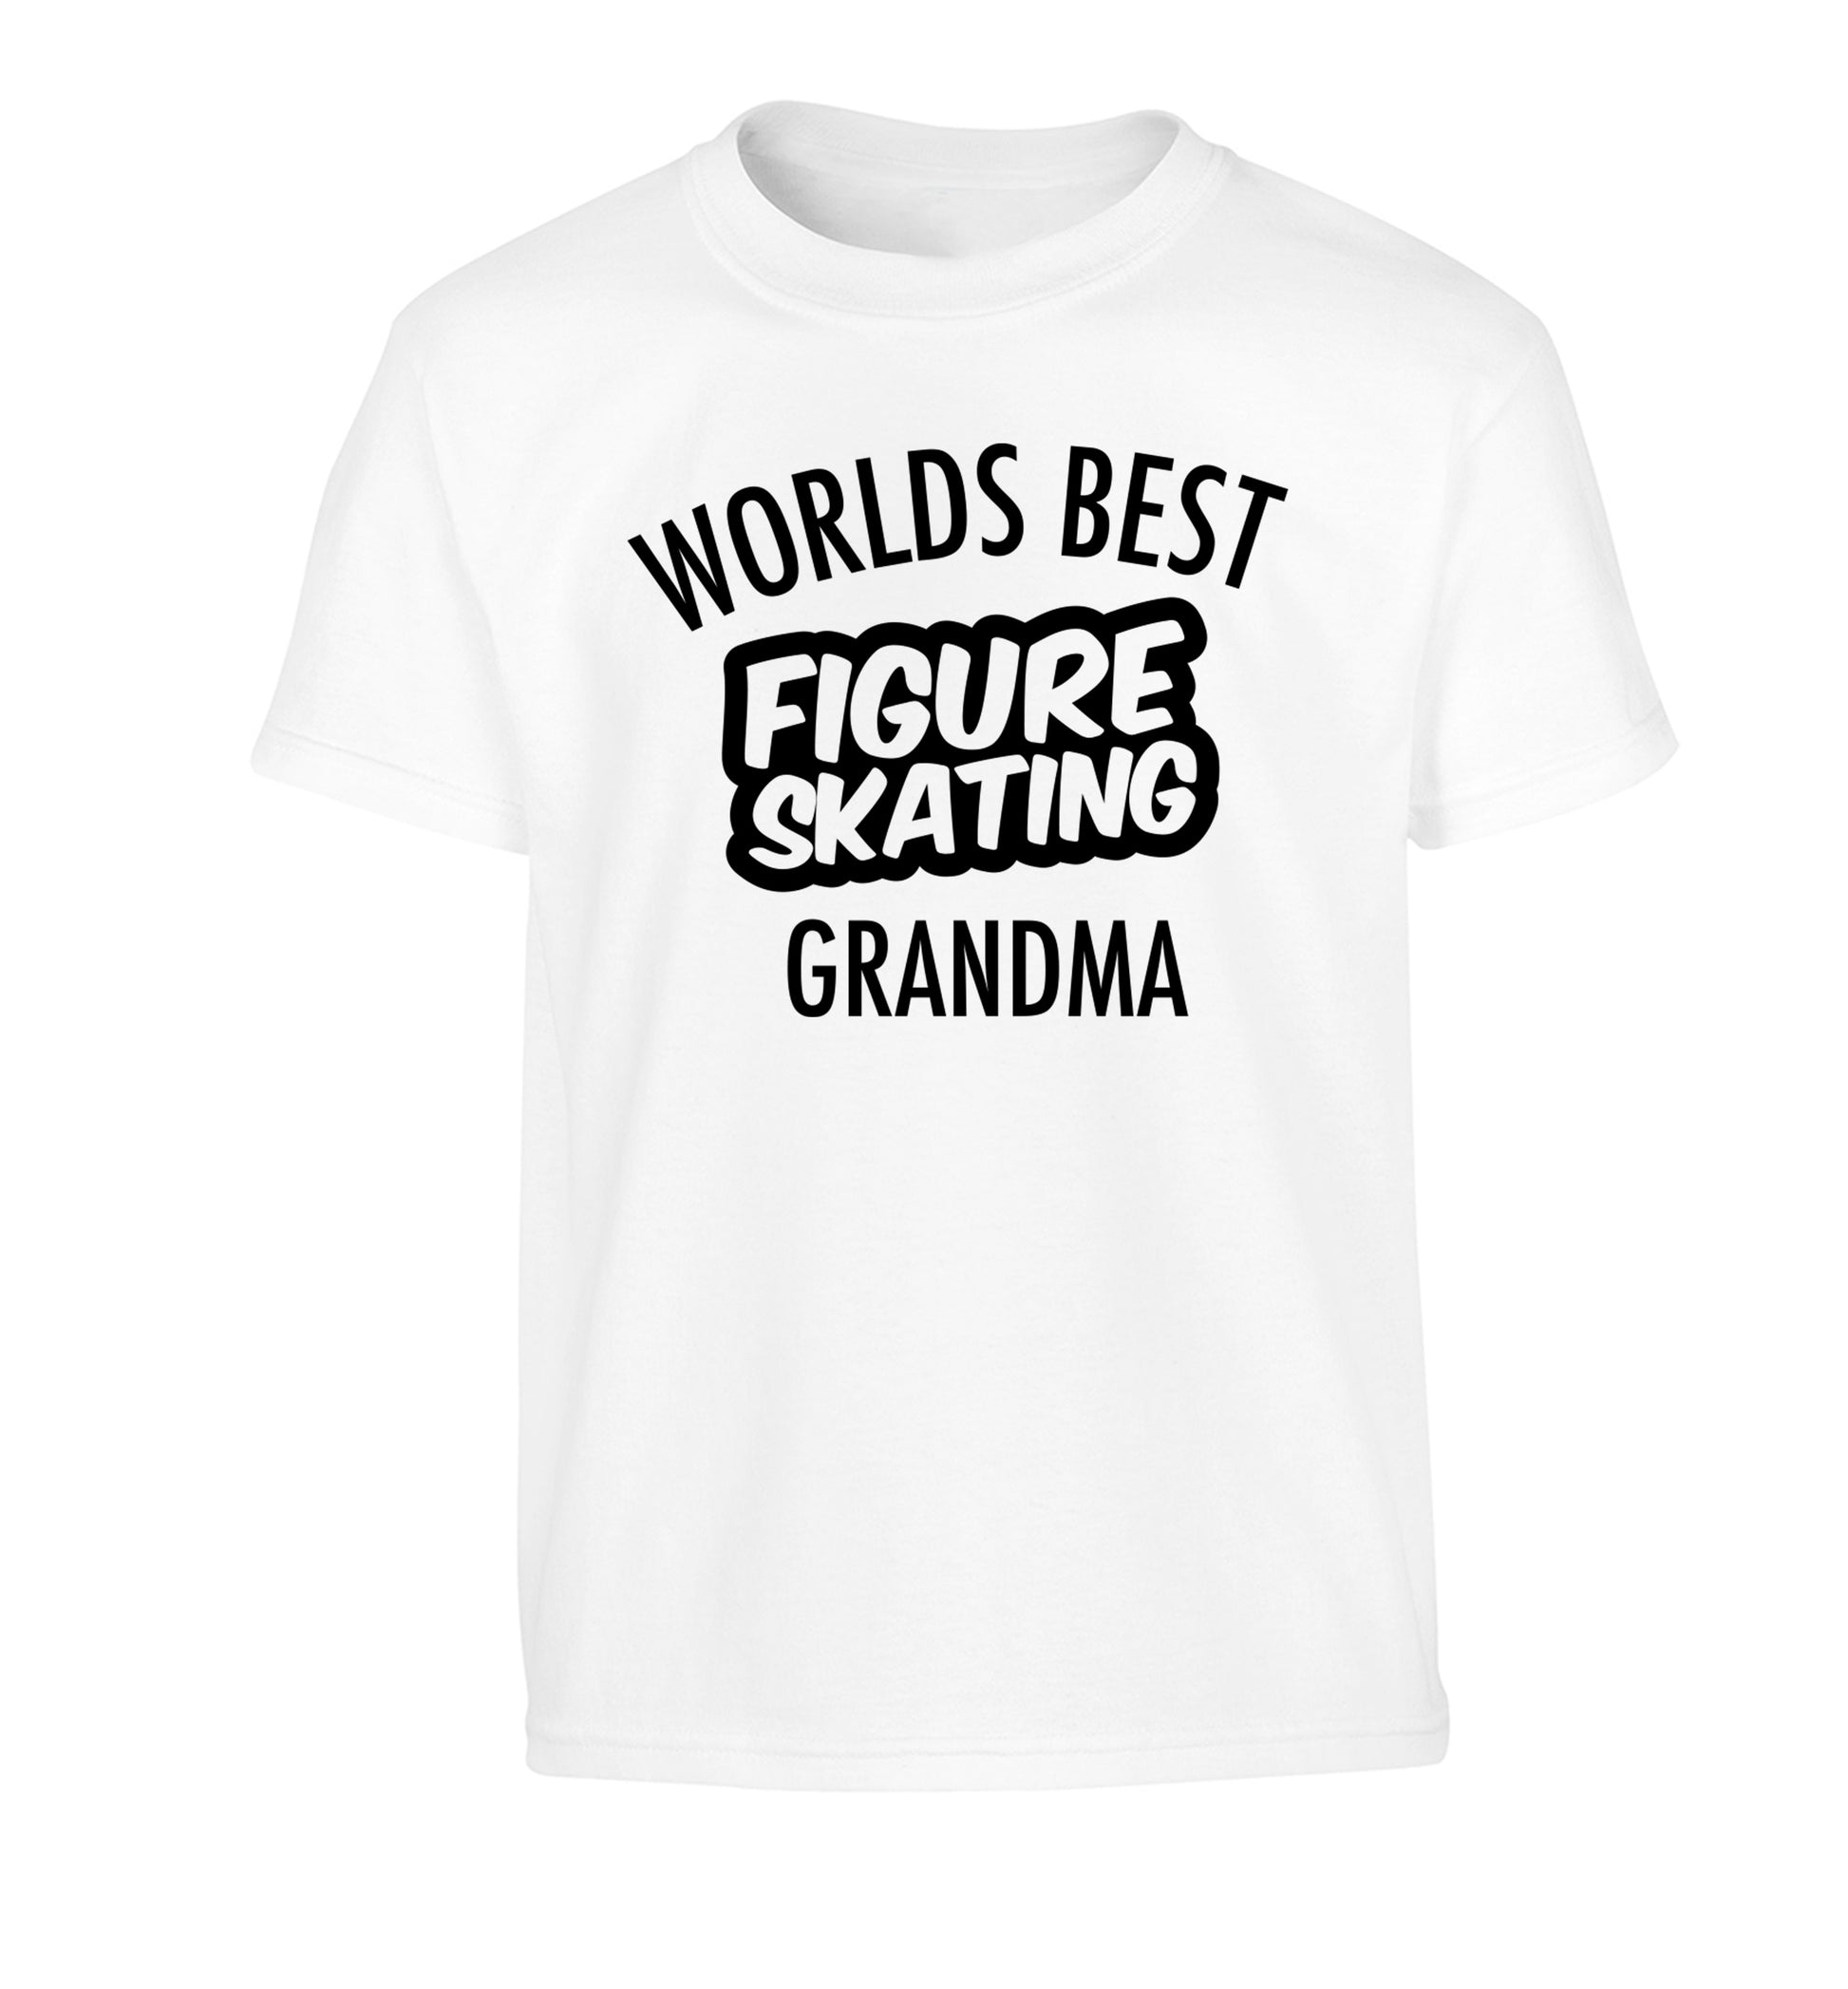 Worlds best figure skating grandma Children's white Tshirt 12-14 Years